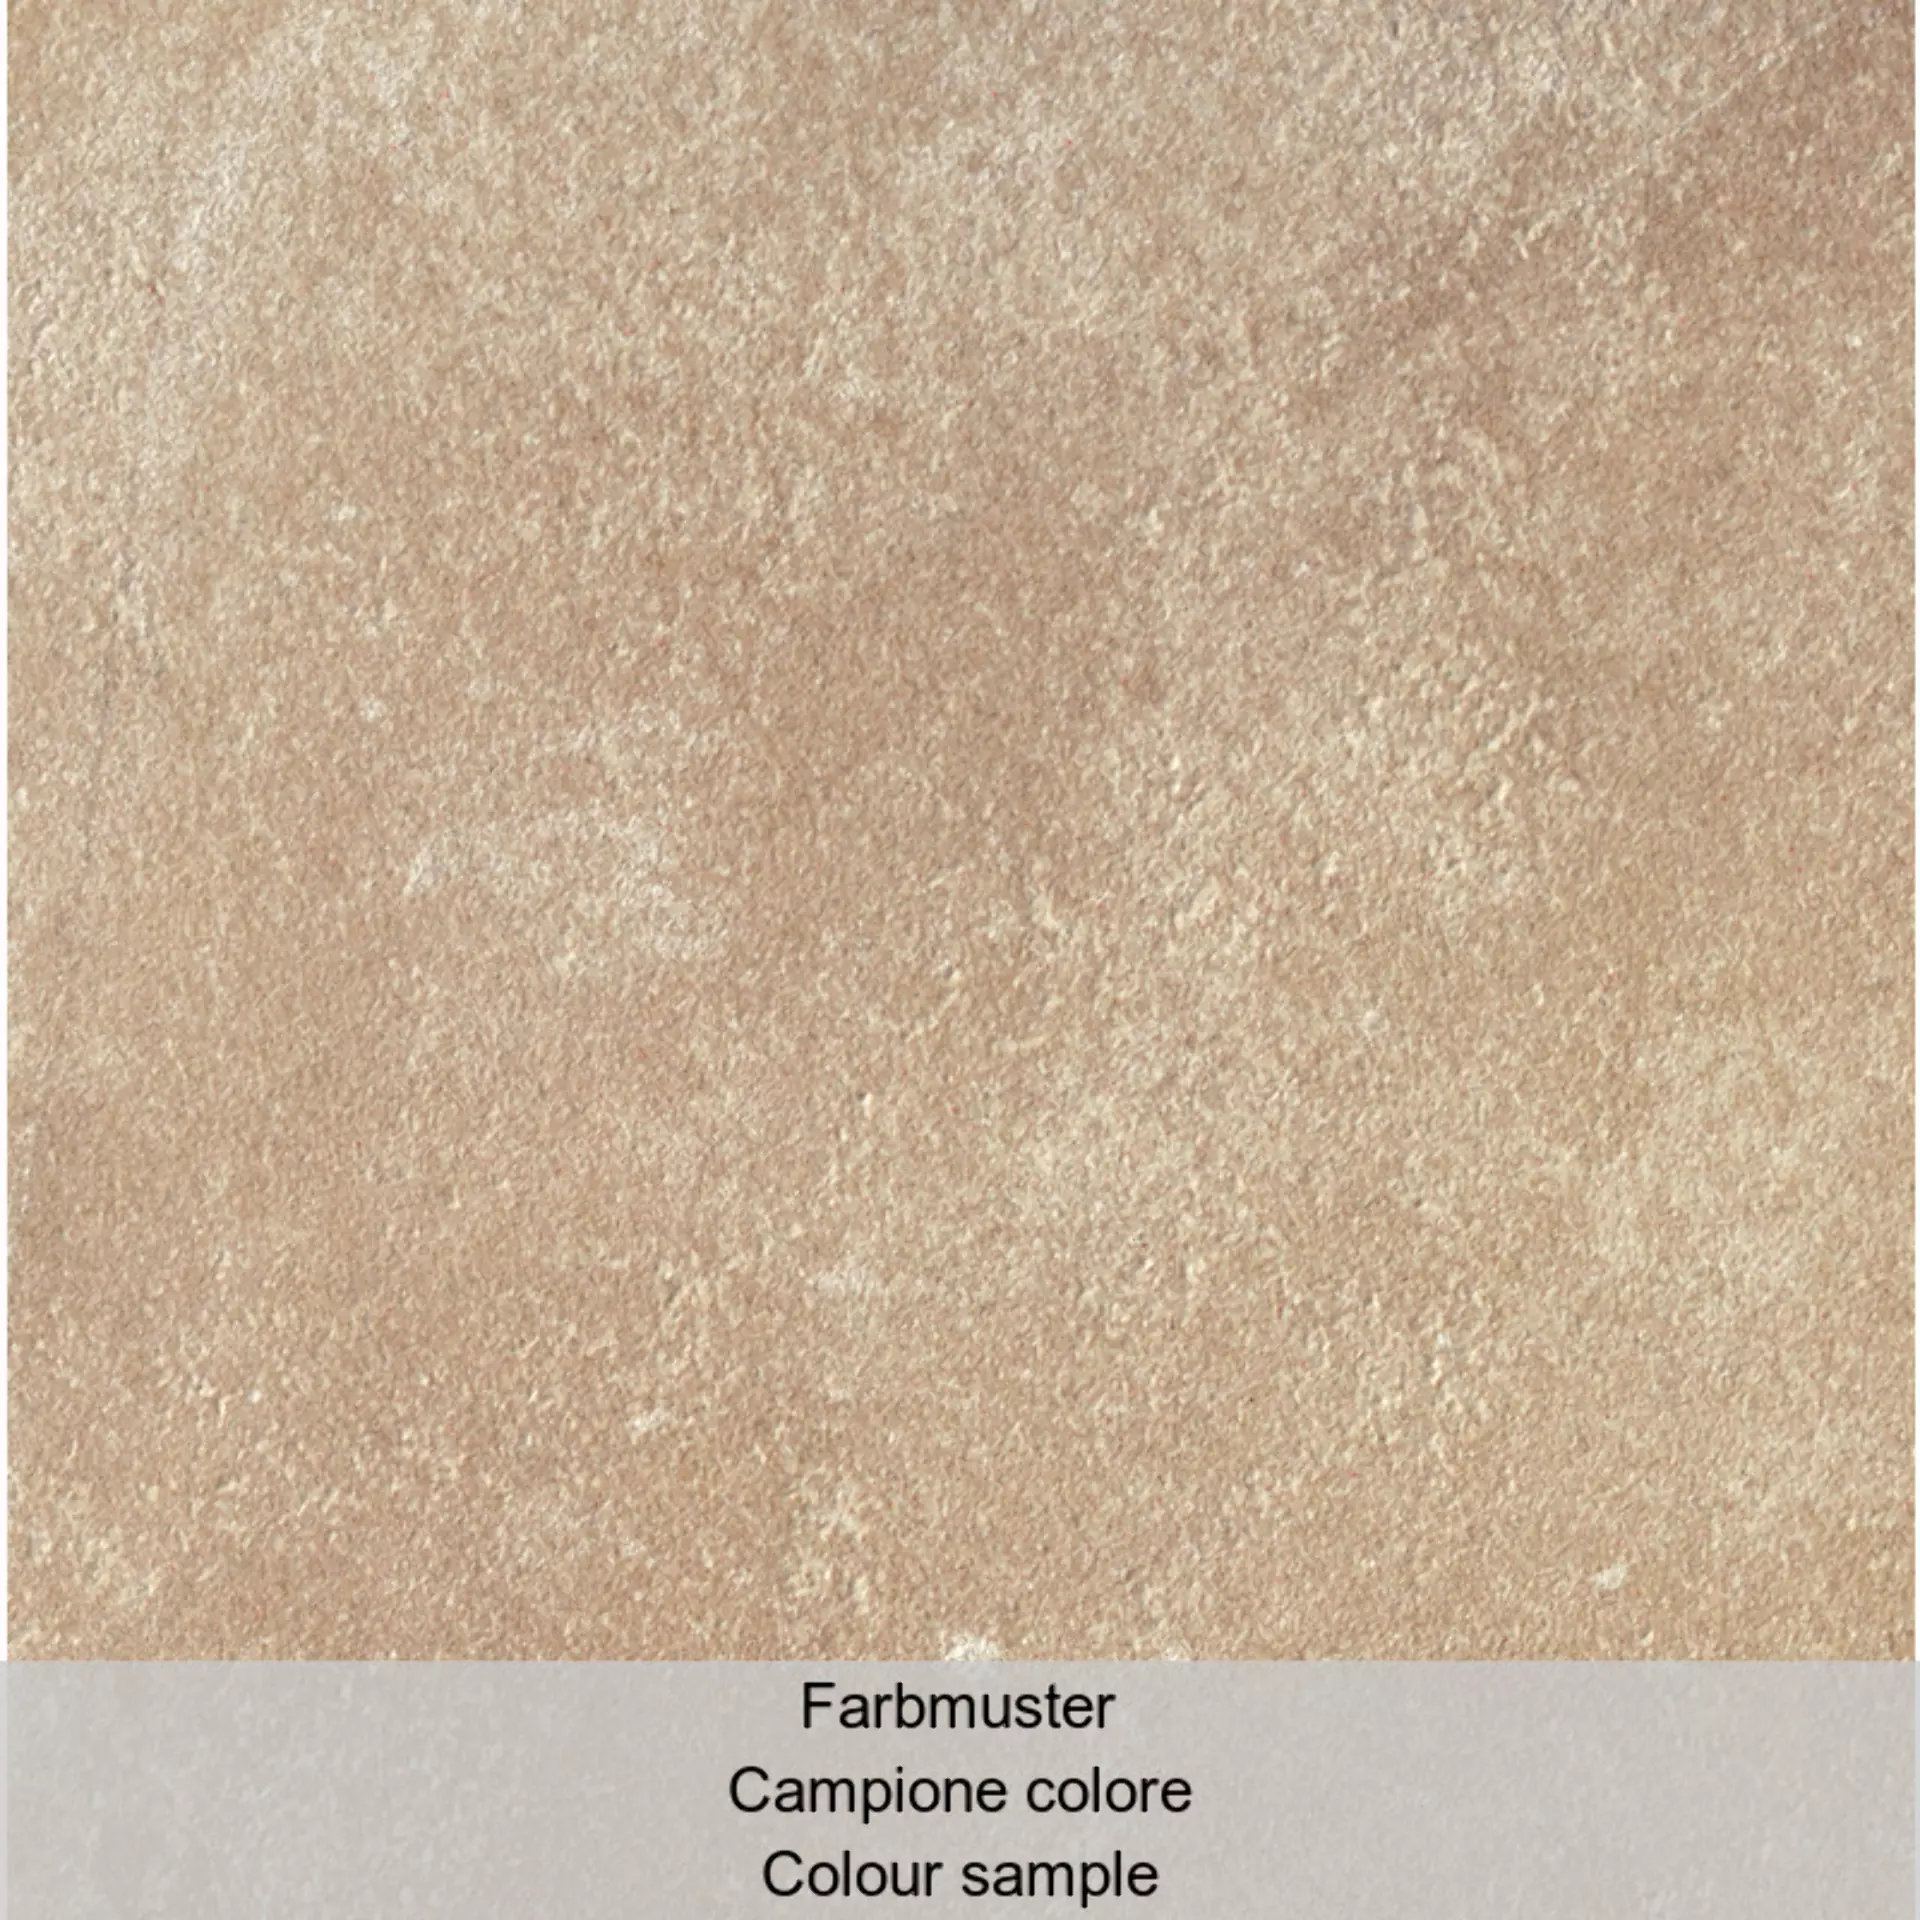 Casalgrande Pietre Di Sardegna Porto Cervo Naturale – Matt 6950111 120x120cm rectified 6mm